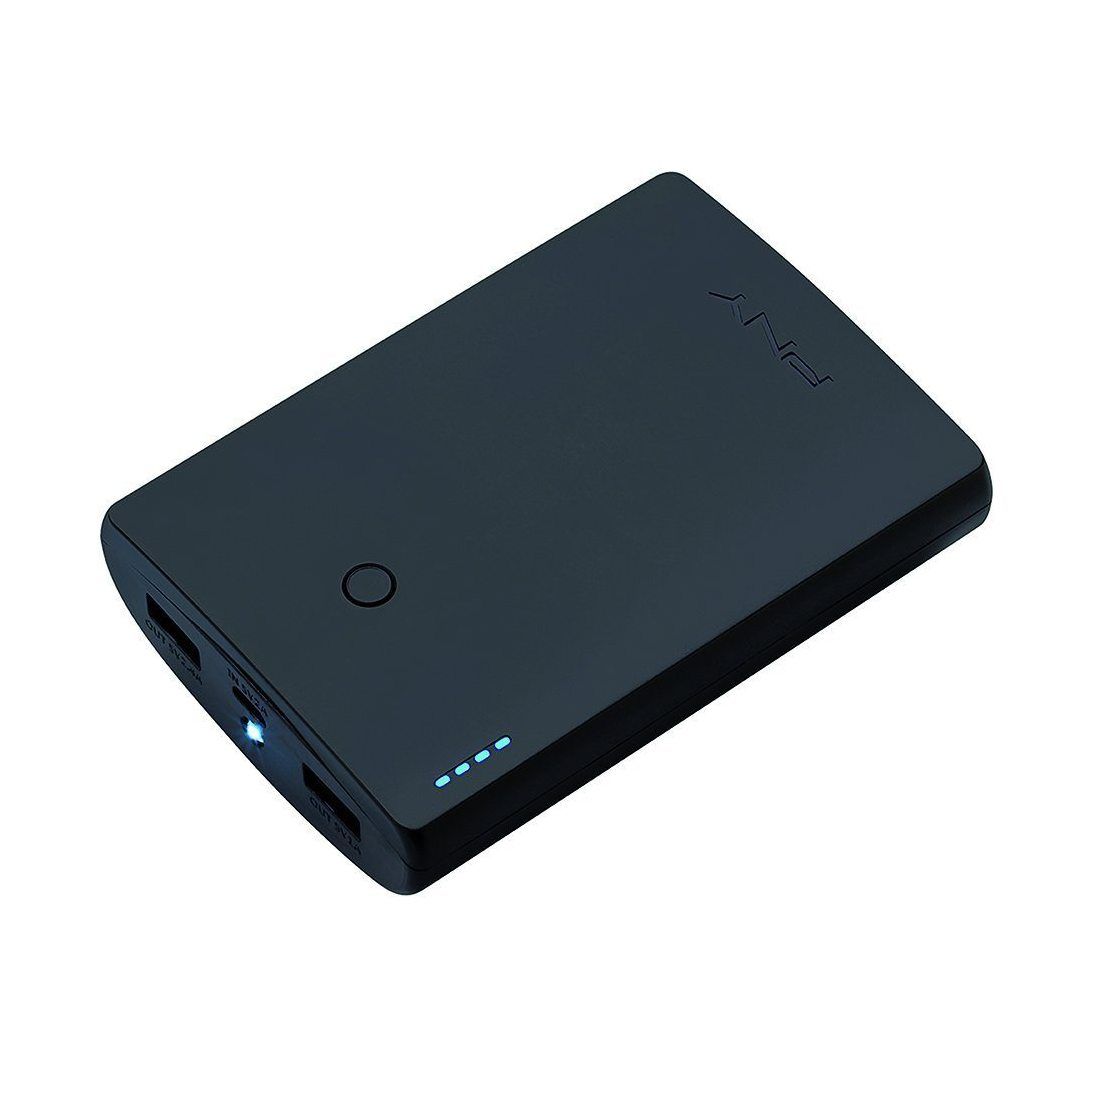 PNY Curve 10400 Batterie externe téléphone portable rechargeable 10400 mAh pour smartphone Noir